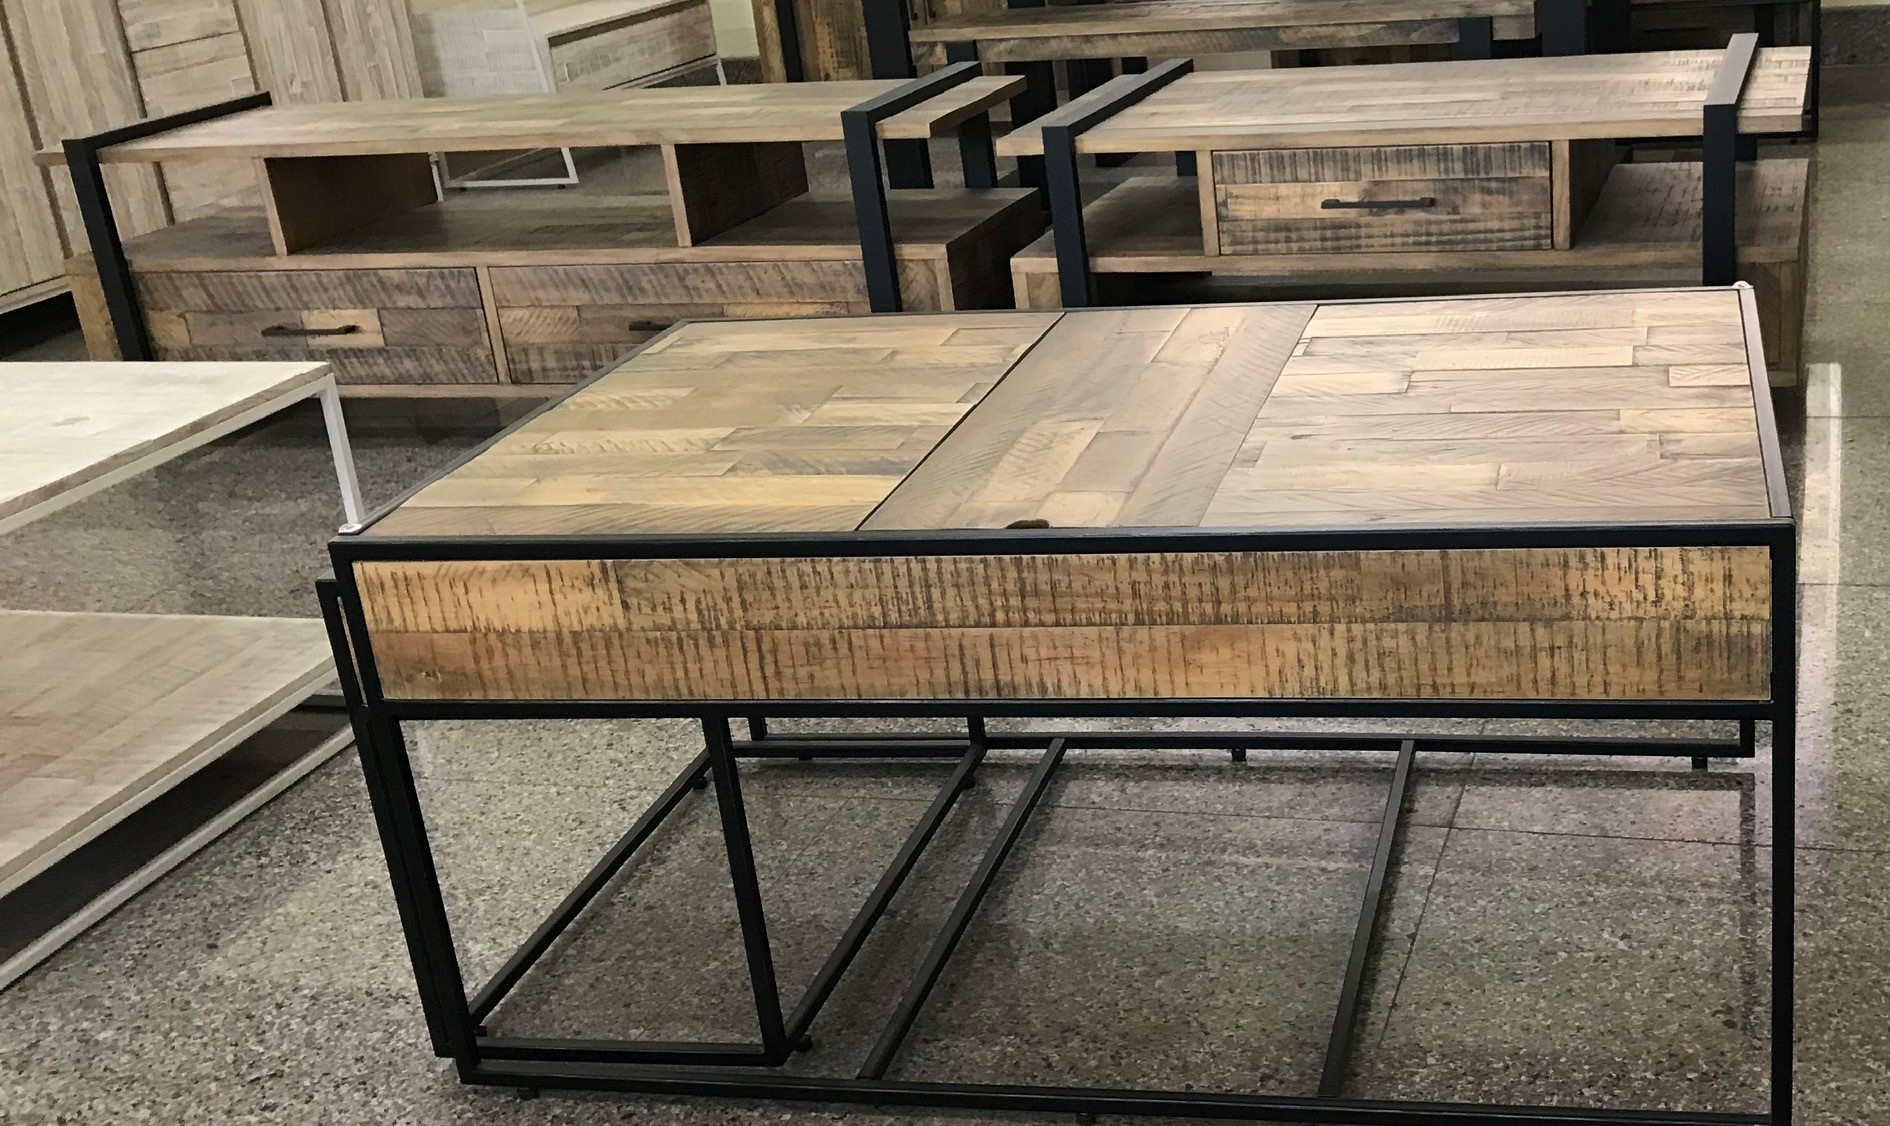 Xuất khẩu gỗ Nhật Bản luôn được biết đến với chất lượng tuyệt vời và độ bền cao. Với các dòng sản phẩm như gỗ sồi, gỗ thông và gỗ đen, xuất khẩu gỗ Nhật Bản đã trở thành một trong những lựa chọn hàng đầu cho nội thất cao cấp.